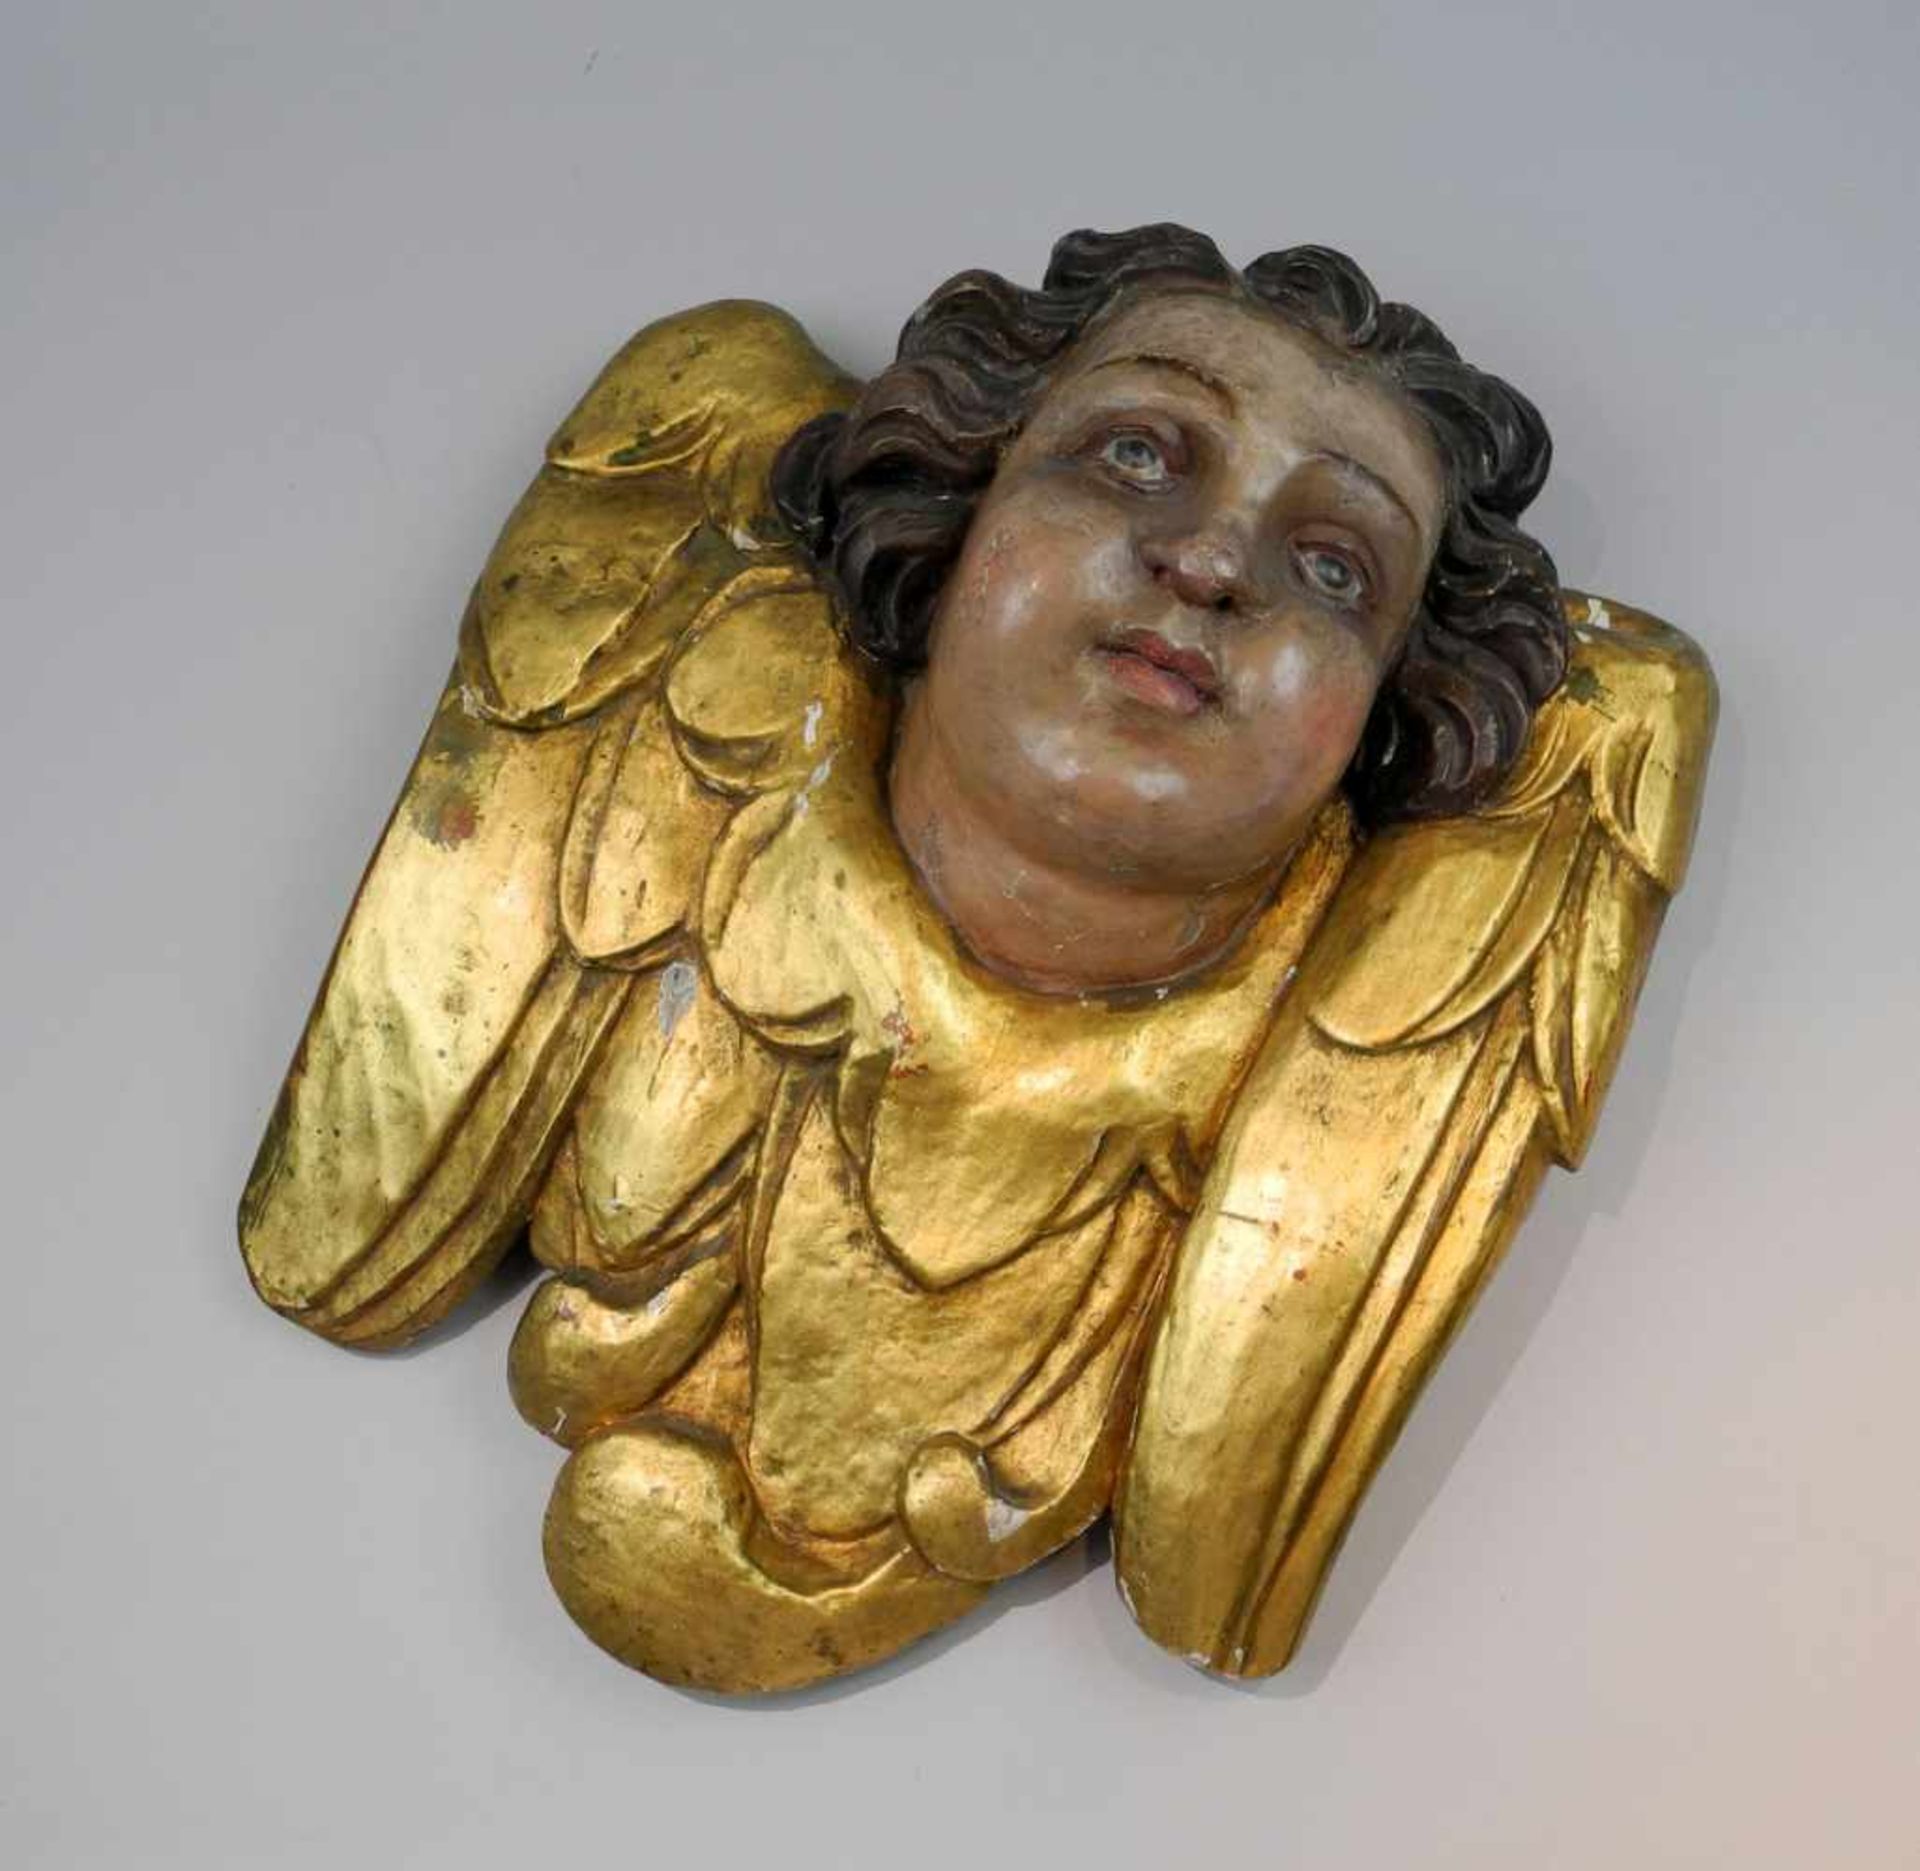 Engelkopf mit FlügelkragenHolz geschnitzt. Polychrom bemalter Kopf eines Engels mit goldfarbenem